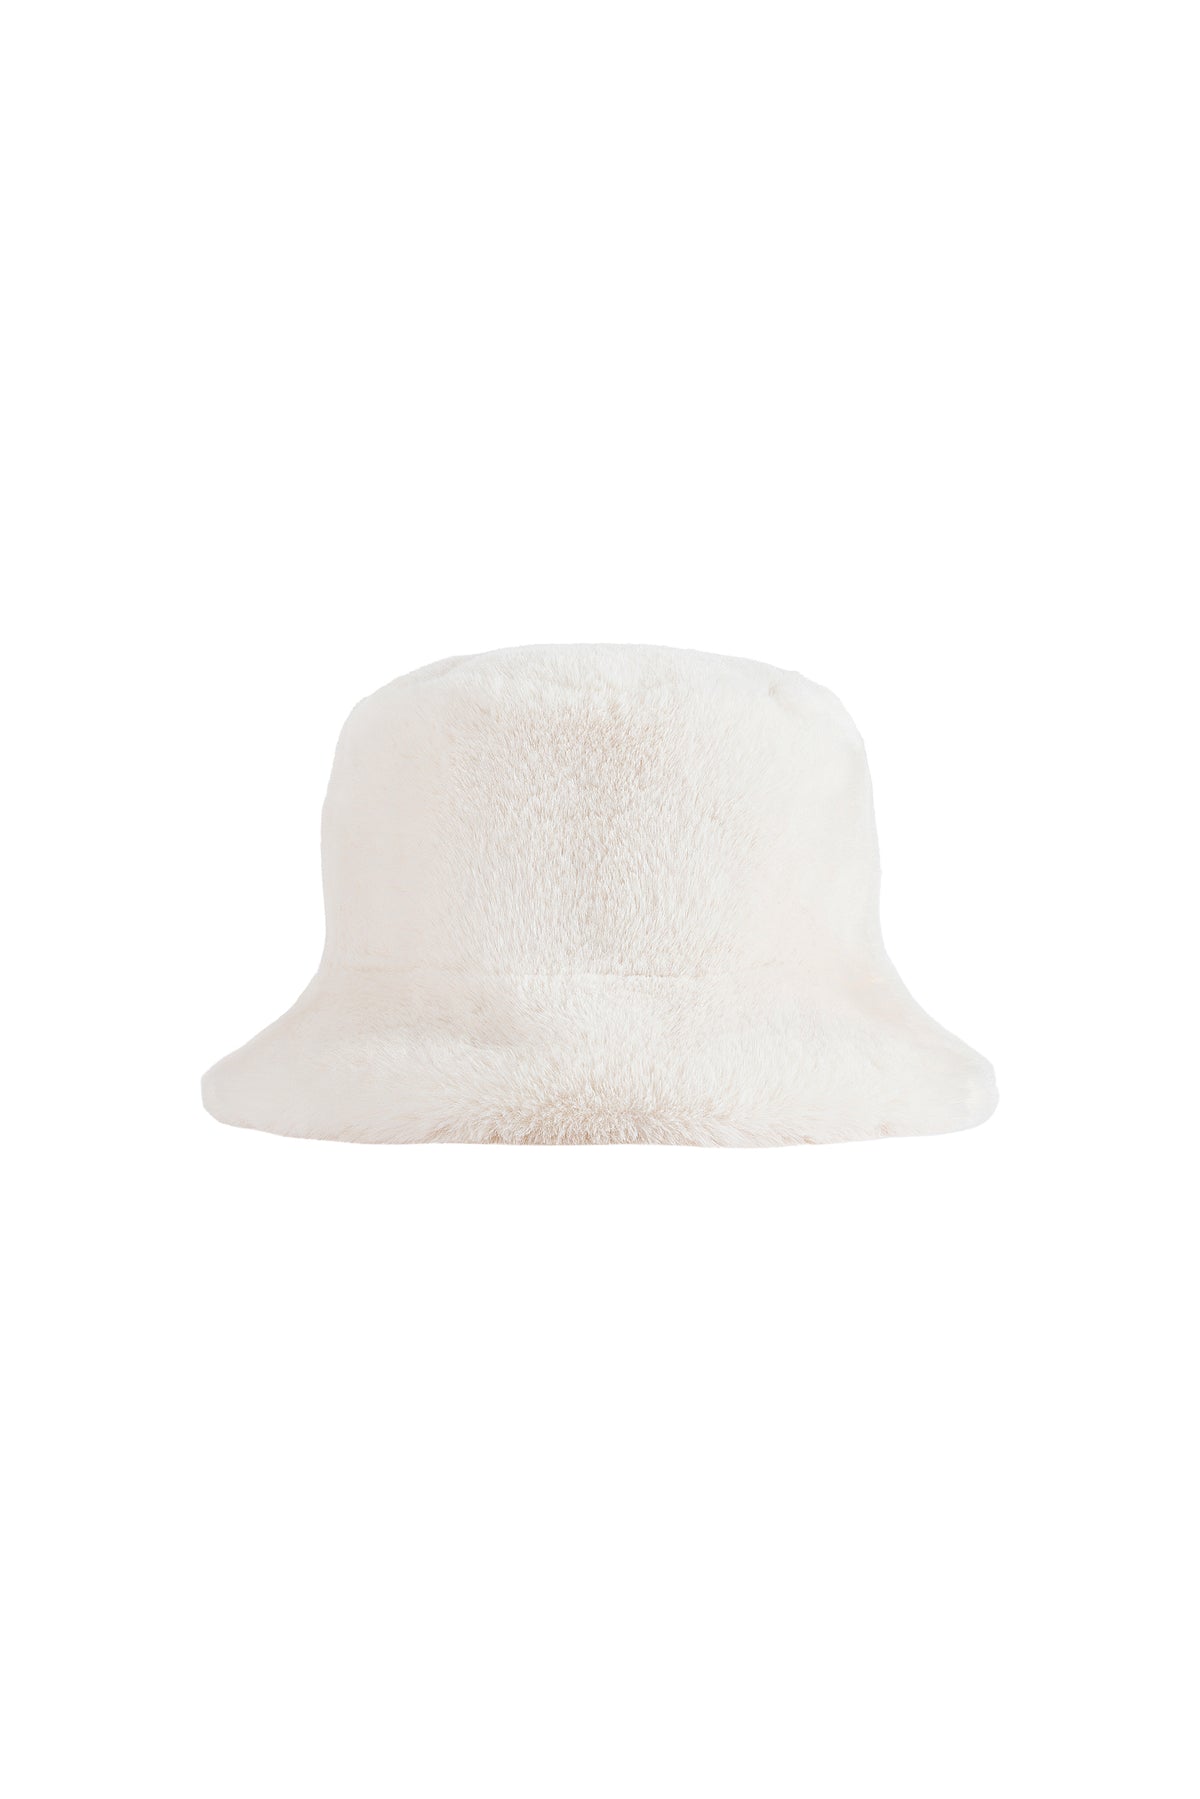 Vegancode - Reversible Bucket Hat in Cream